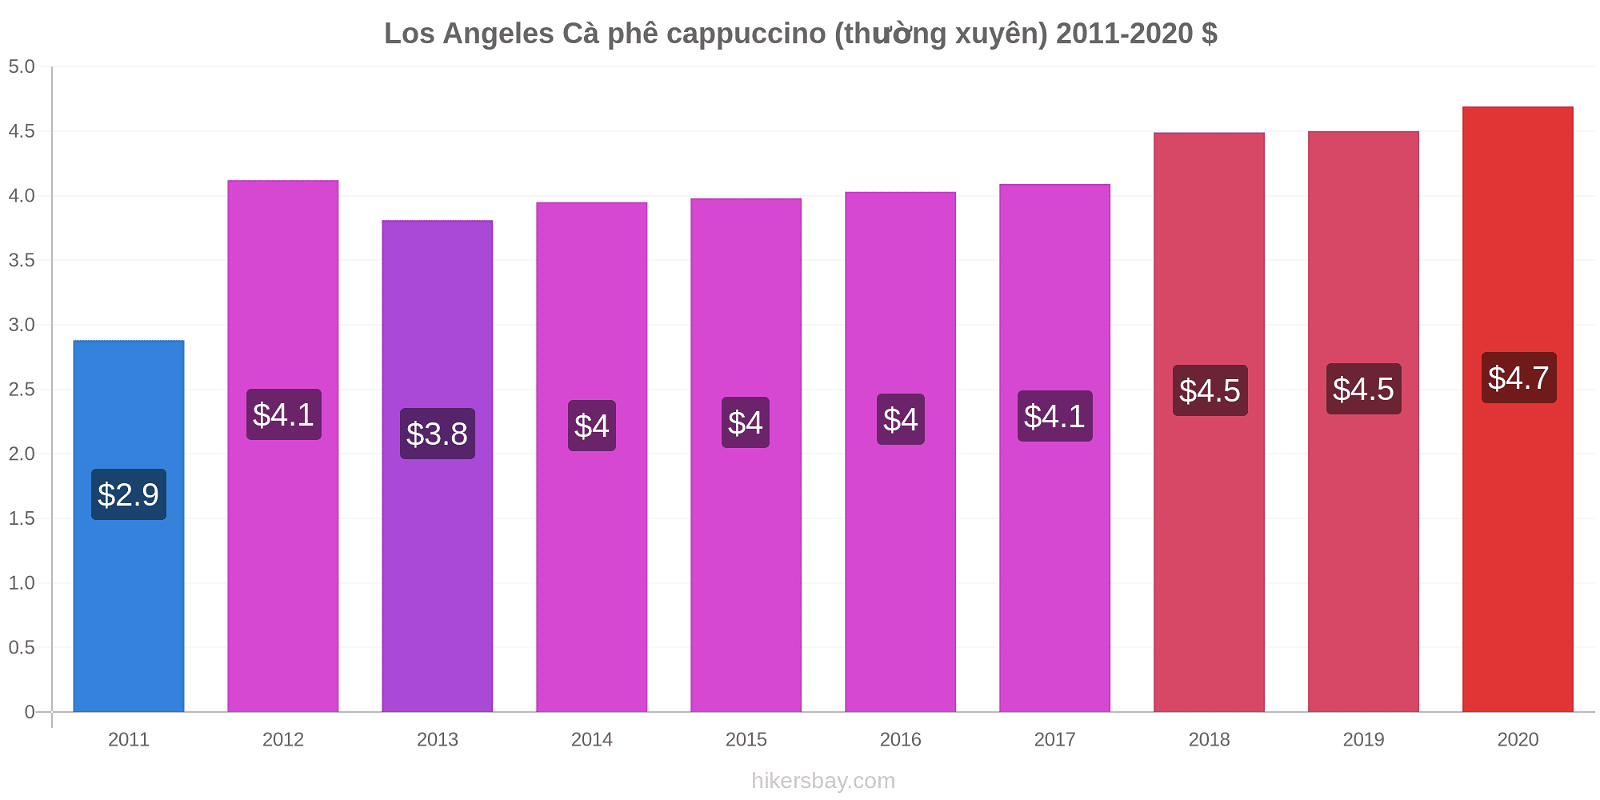 Los Angeles thay đổi giá Cà phê cappuccino (thường xuyên) hikersbay.com